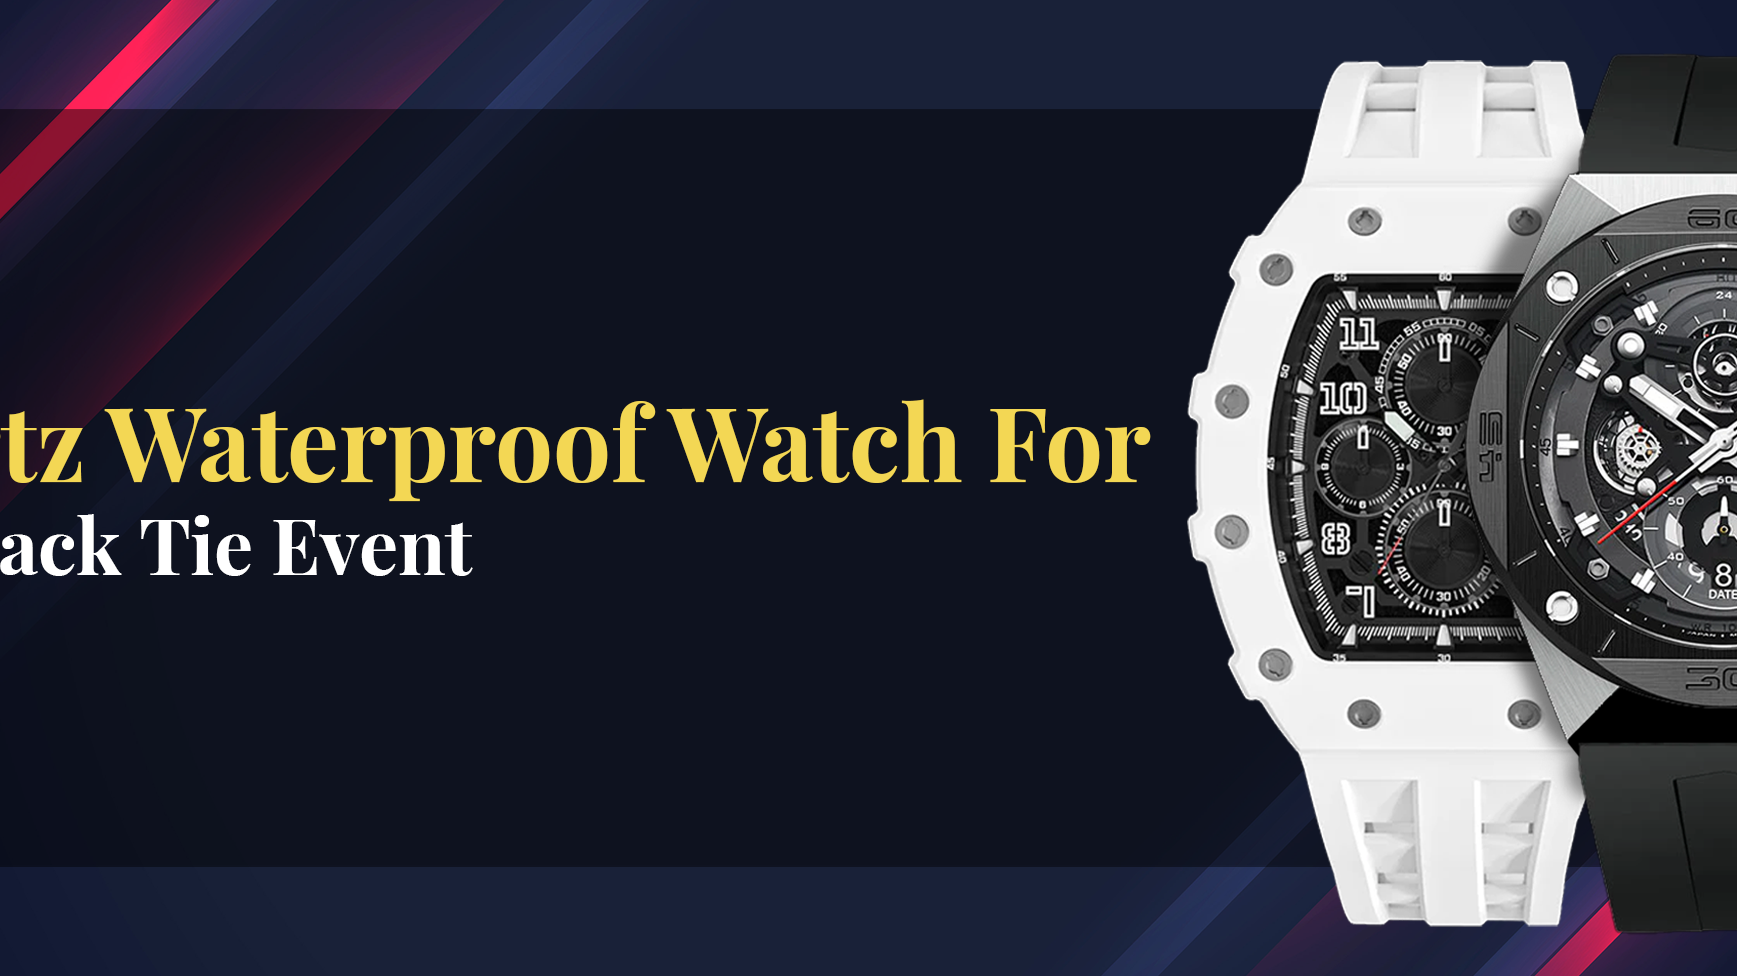 Buy Quartz Waterproof Watch For Your Next Black Tie Event